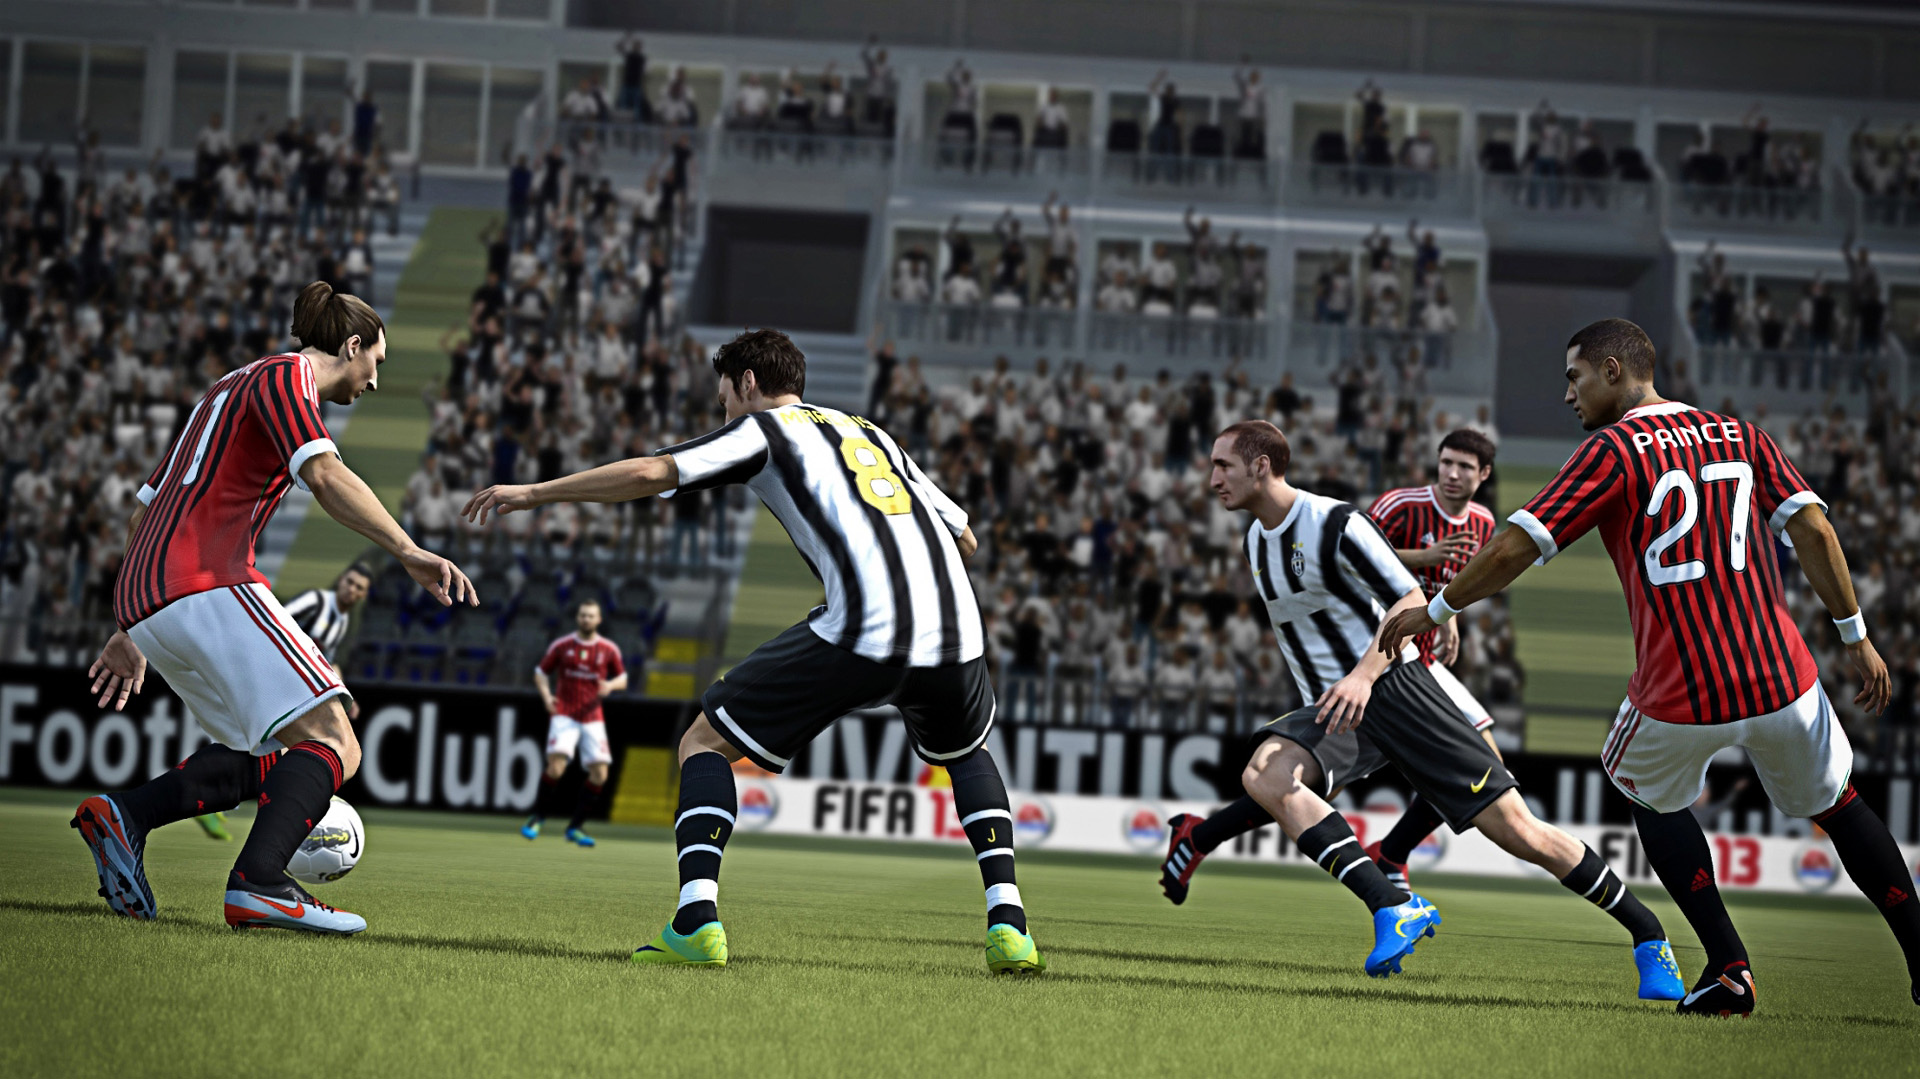 FIFA 13 primi dettagli e immagini trapelati online